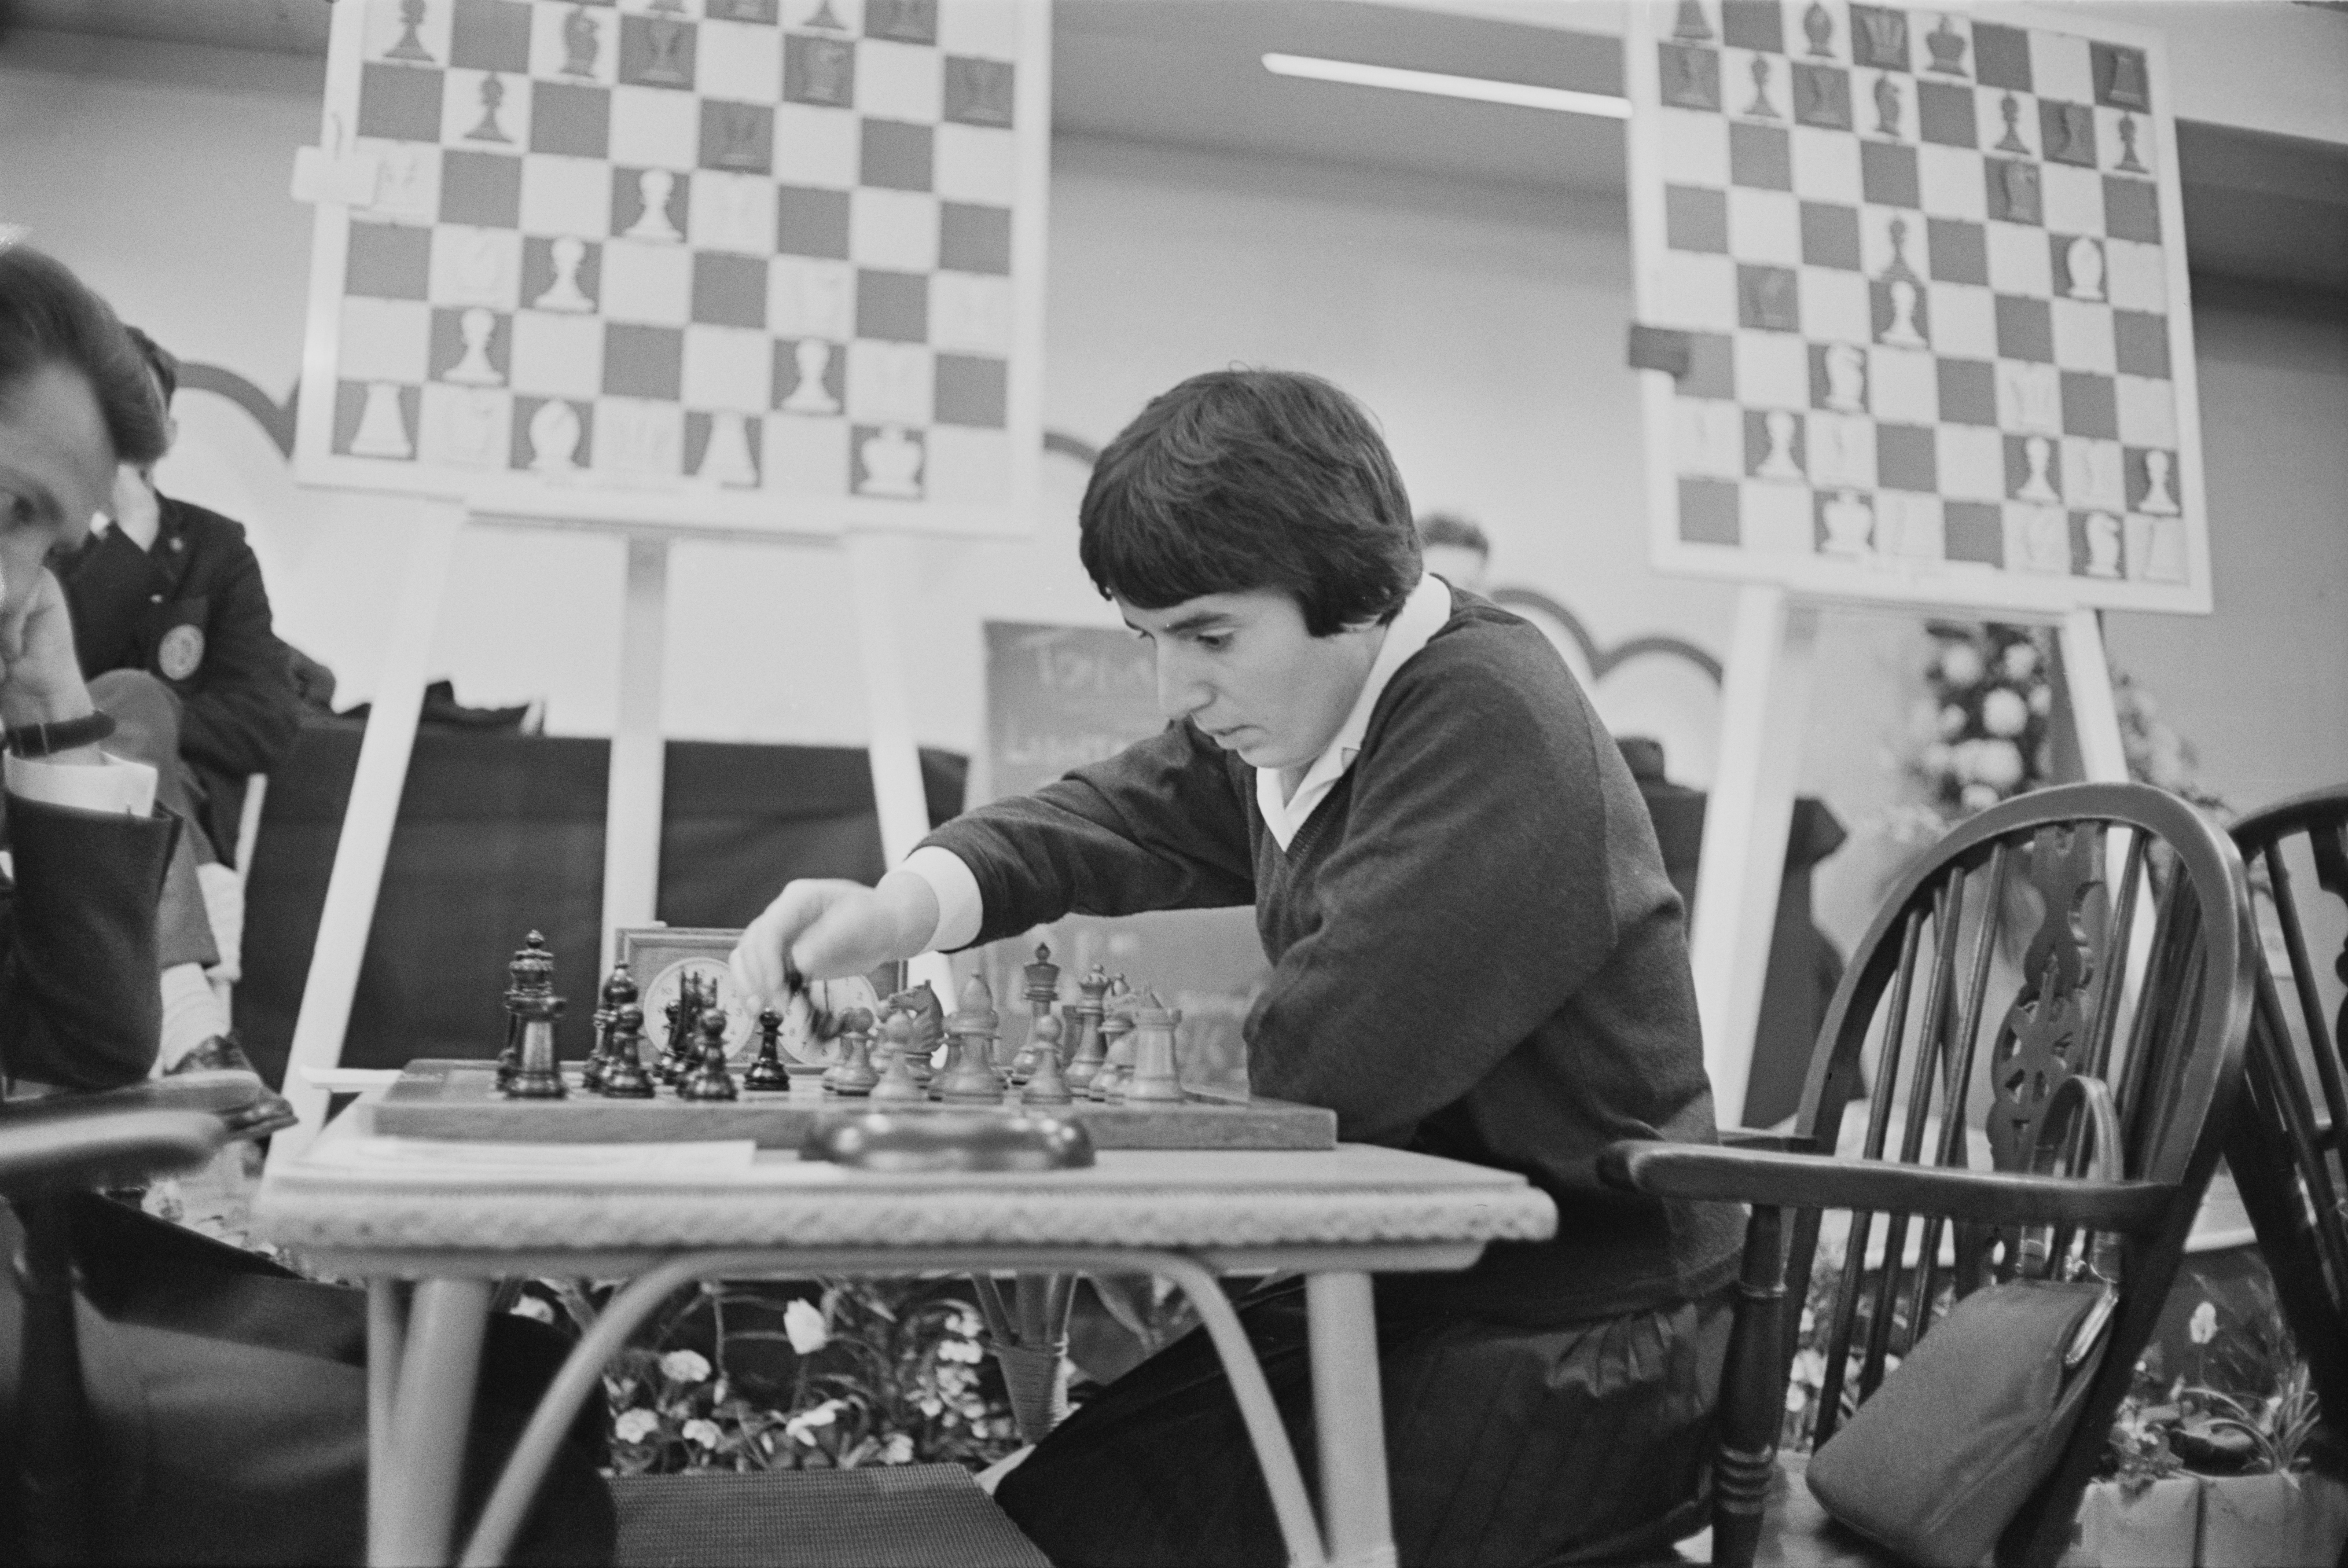 O xadrez em Portugal e a série “Gambito de dama”